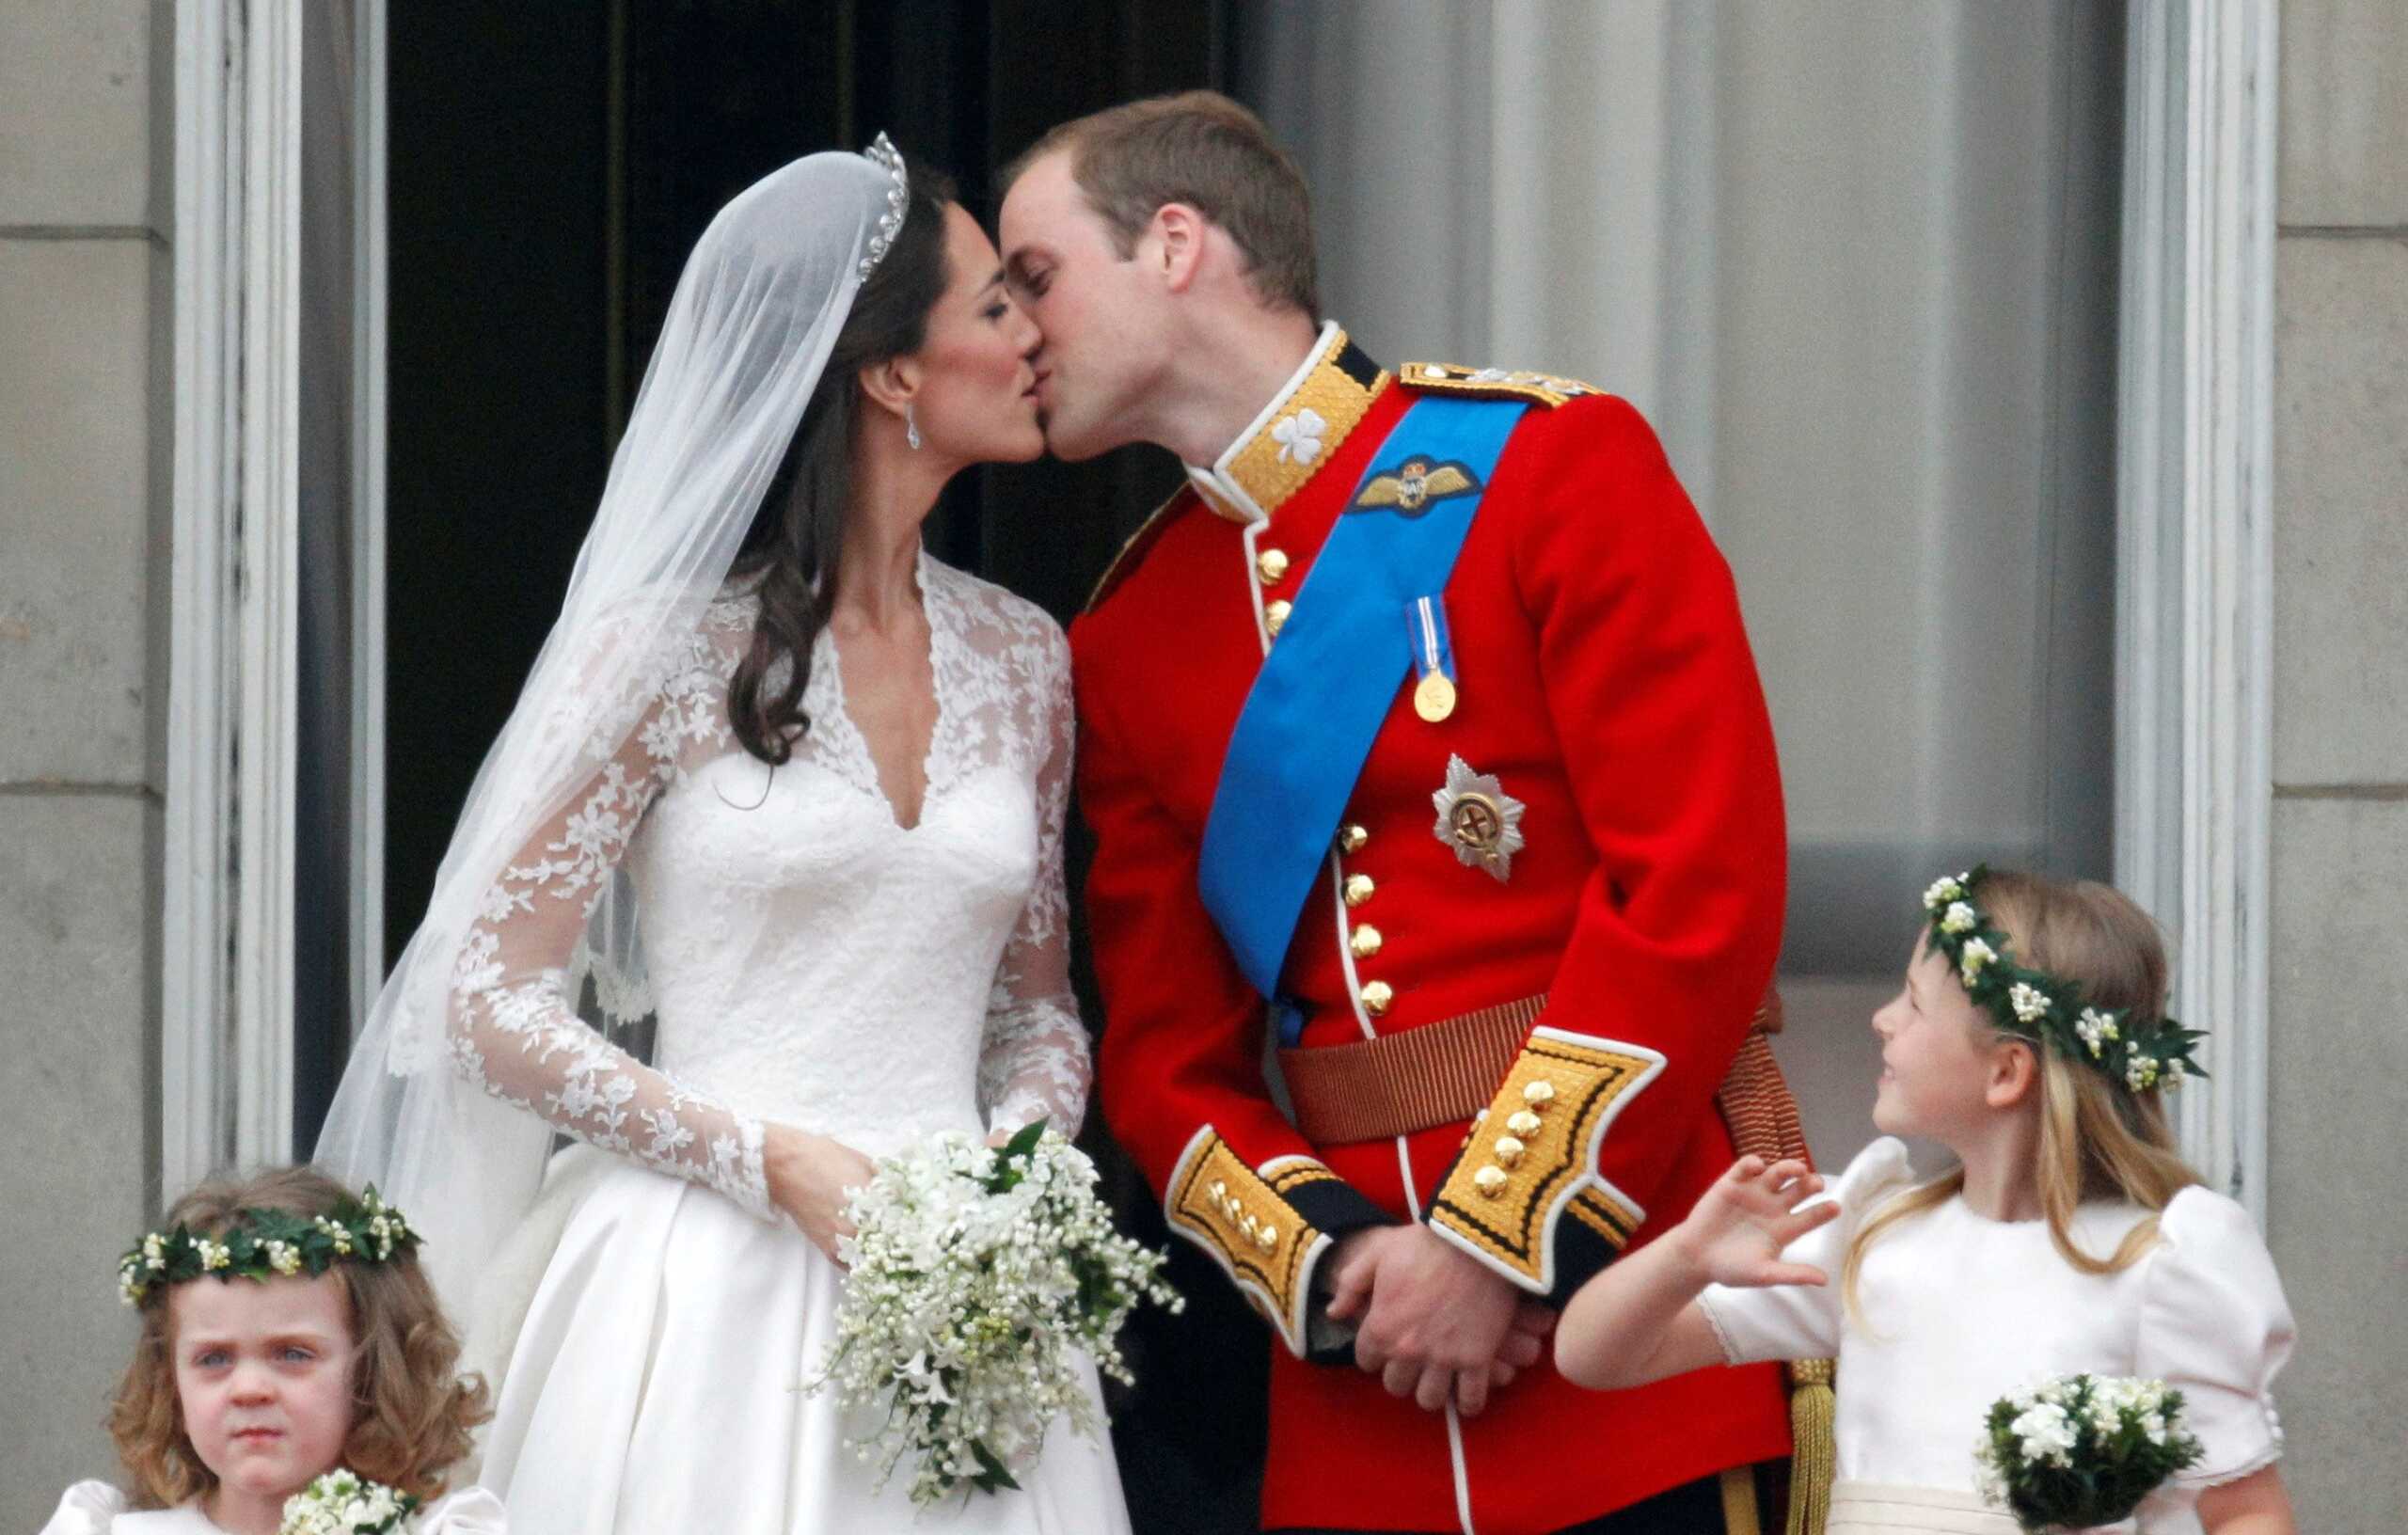 Βασιλιάς Κάρολος: Ο άγνωστος ρόλος του στον γάμο του πρίγκιπα Γουίλιαμ και της Κέιτ Μίντλεντον